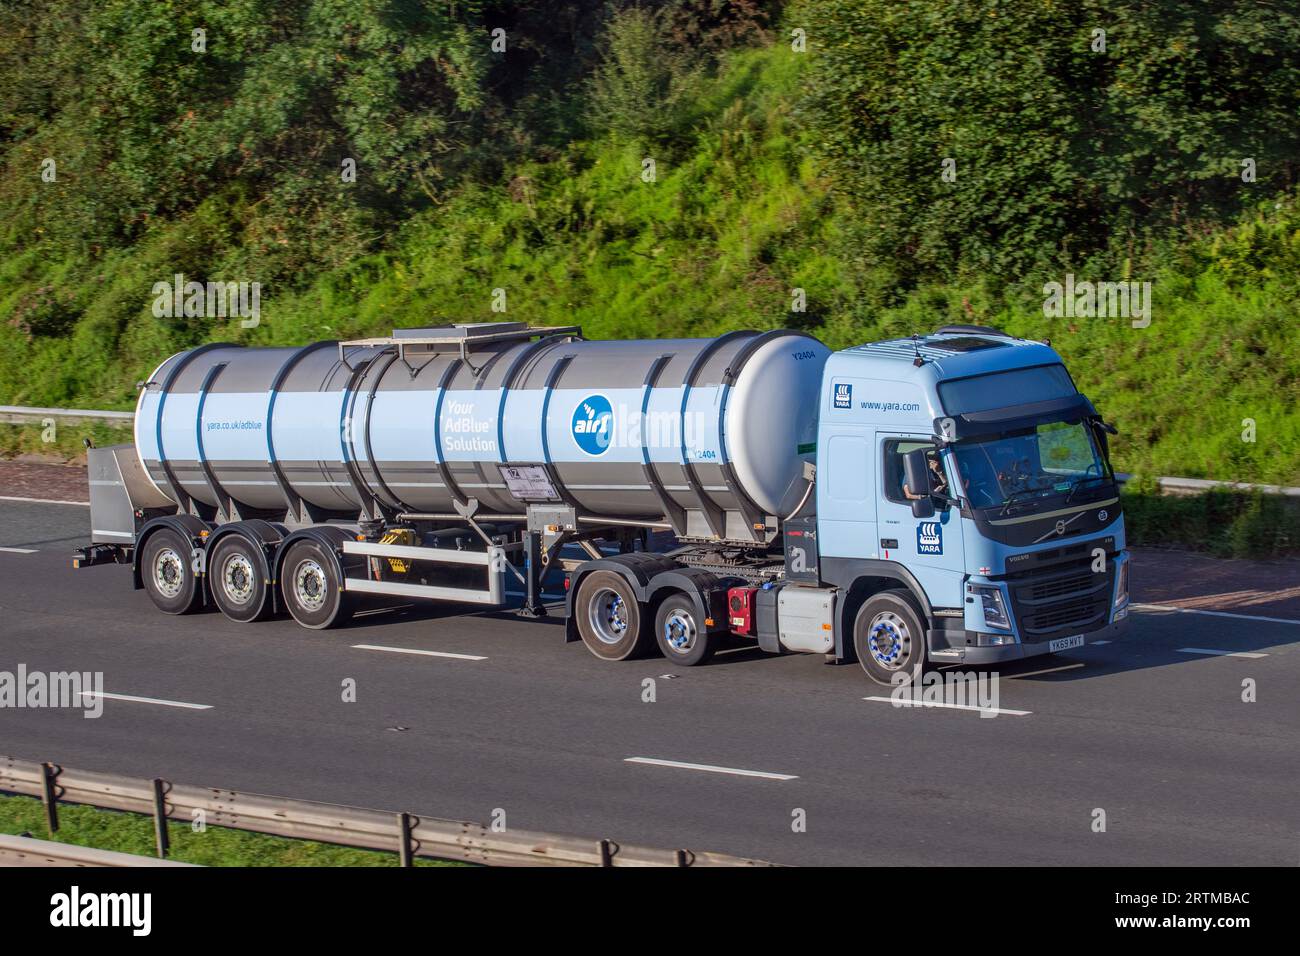 Le fabricant d'AdBlue Yara Suttons Storage Tankers Air1 produit réservoir conique, voyageant sur l'autoroute M6 dans le Grand Manchester, Royaume-Uni Banque D'Images